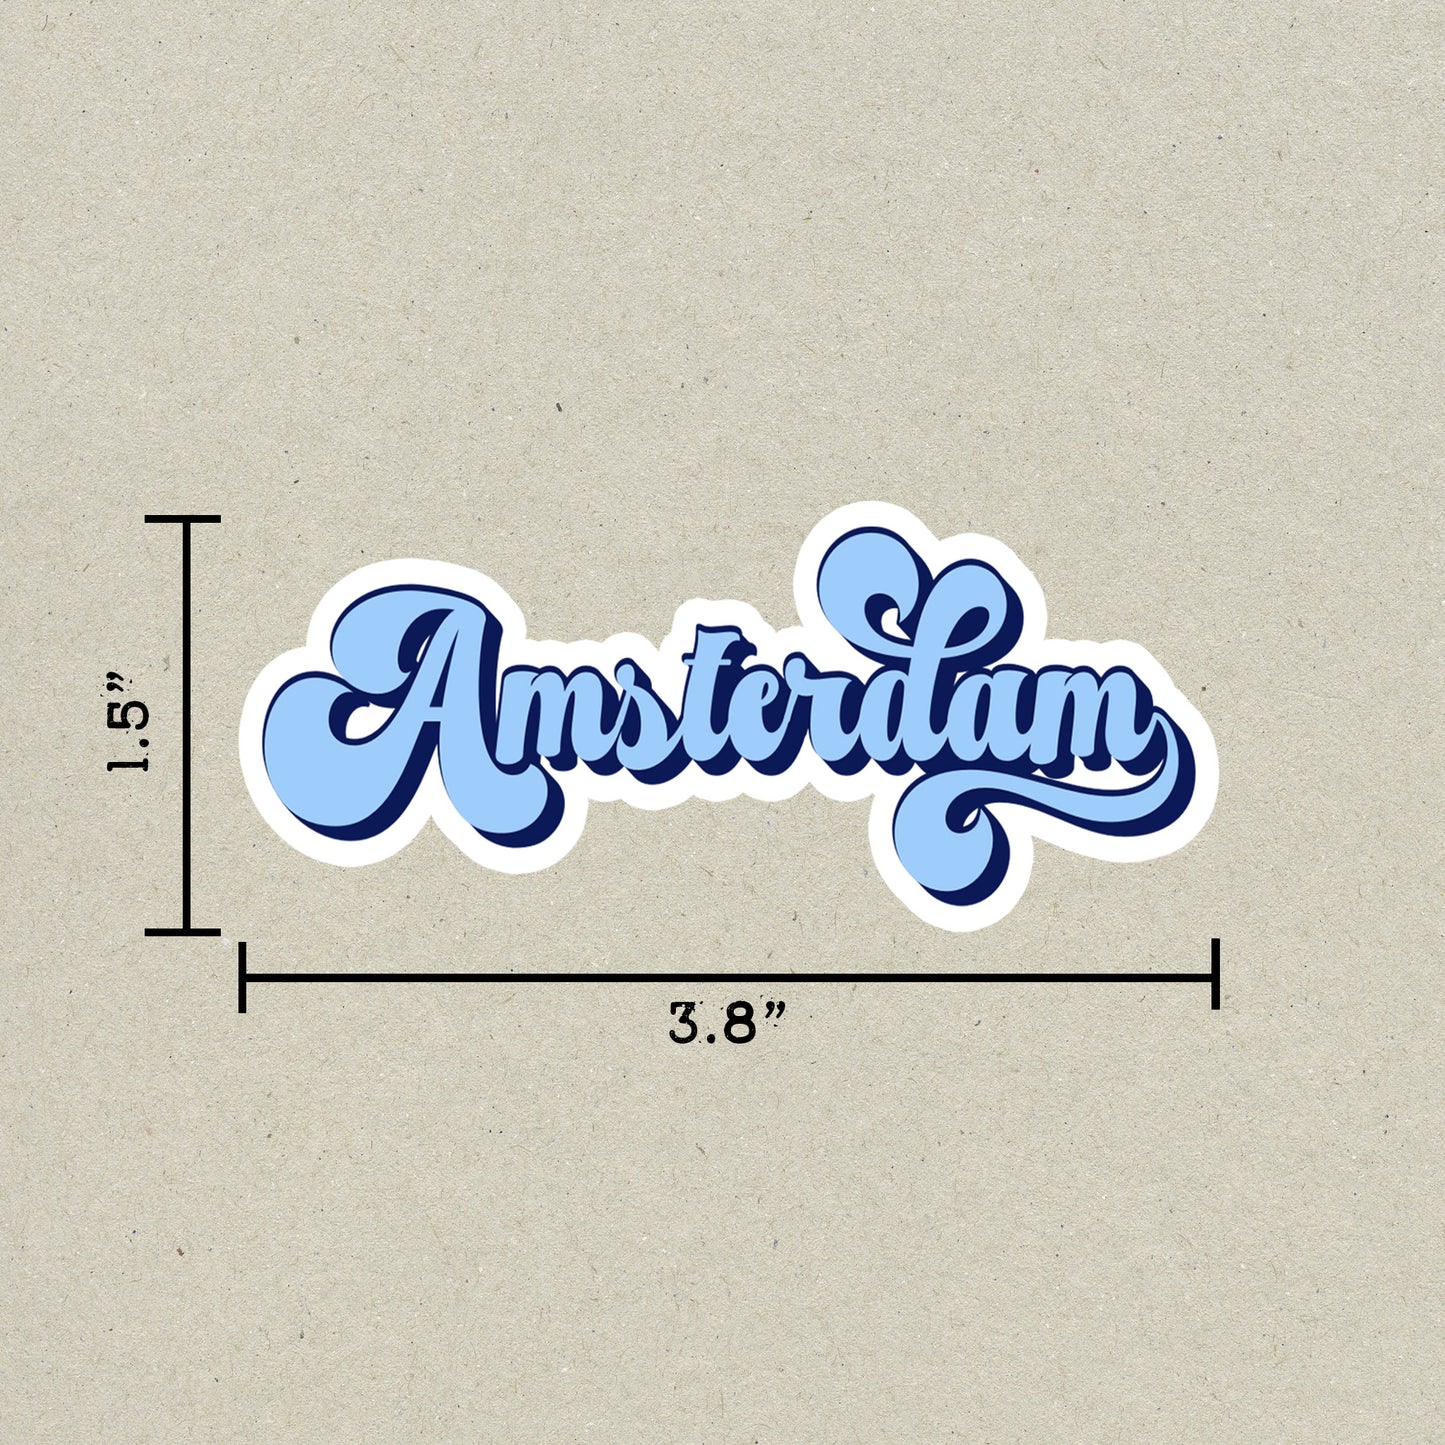 Amsterdam Vintage Sticker